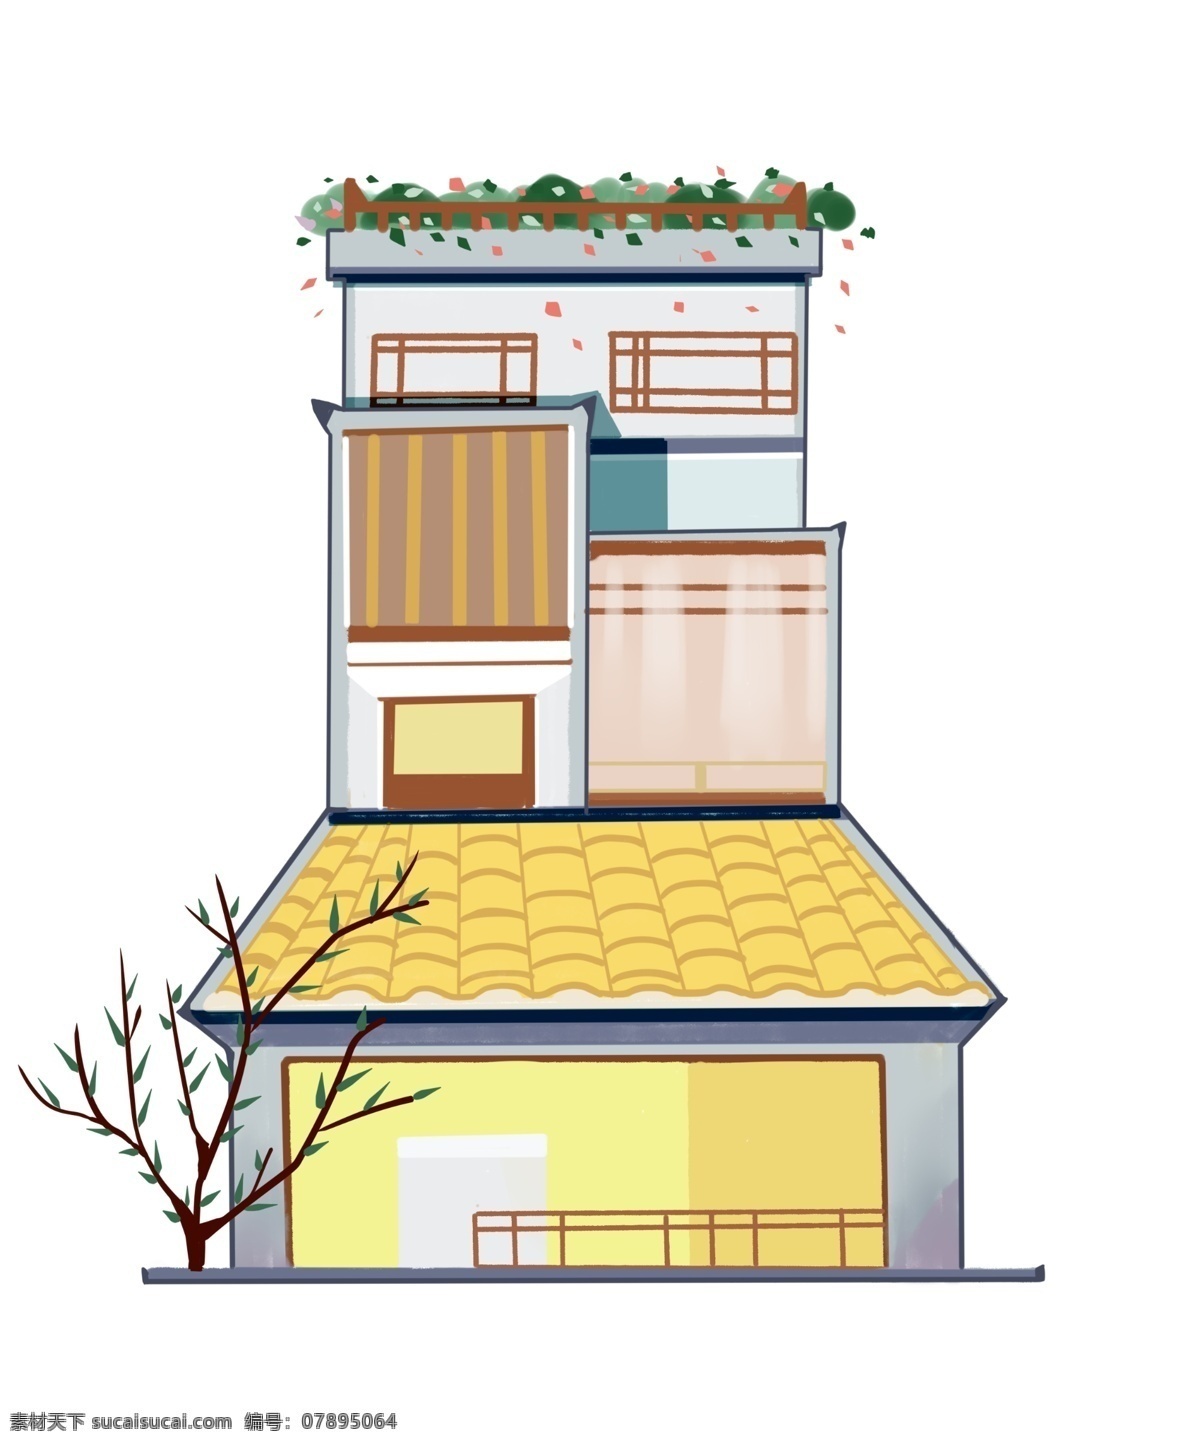 阁楼 式 建筑 房子 插画 阁楼式房子 卡通插画 建筑插画 房子插画 高大的建筑 漂亮的房子 黄色的屋顶